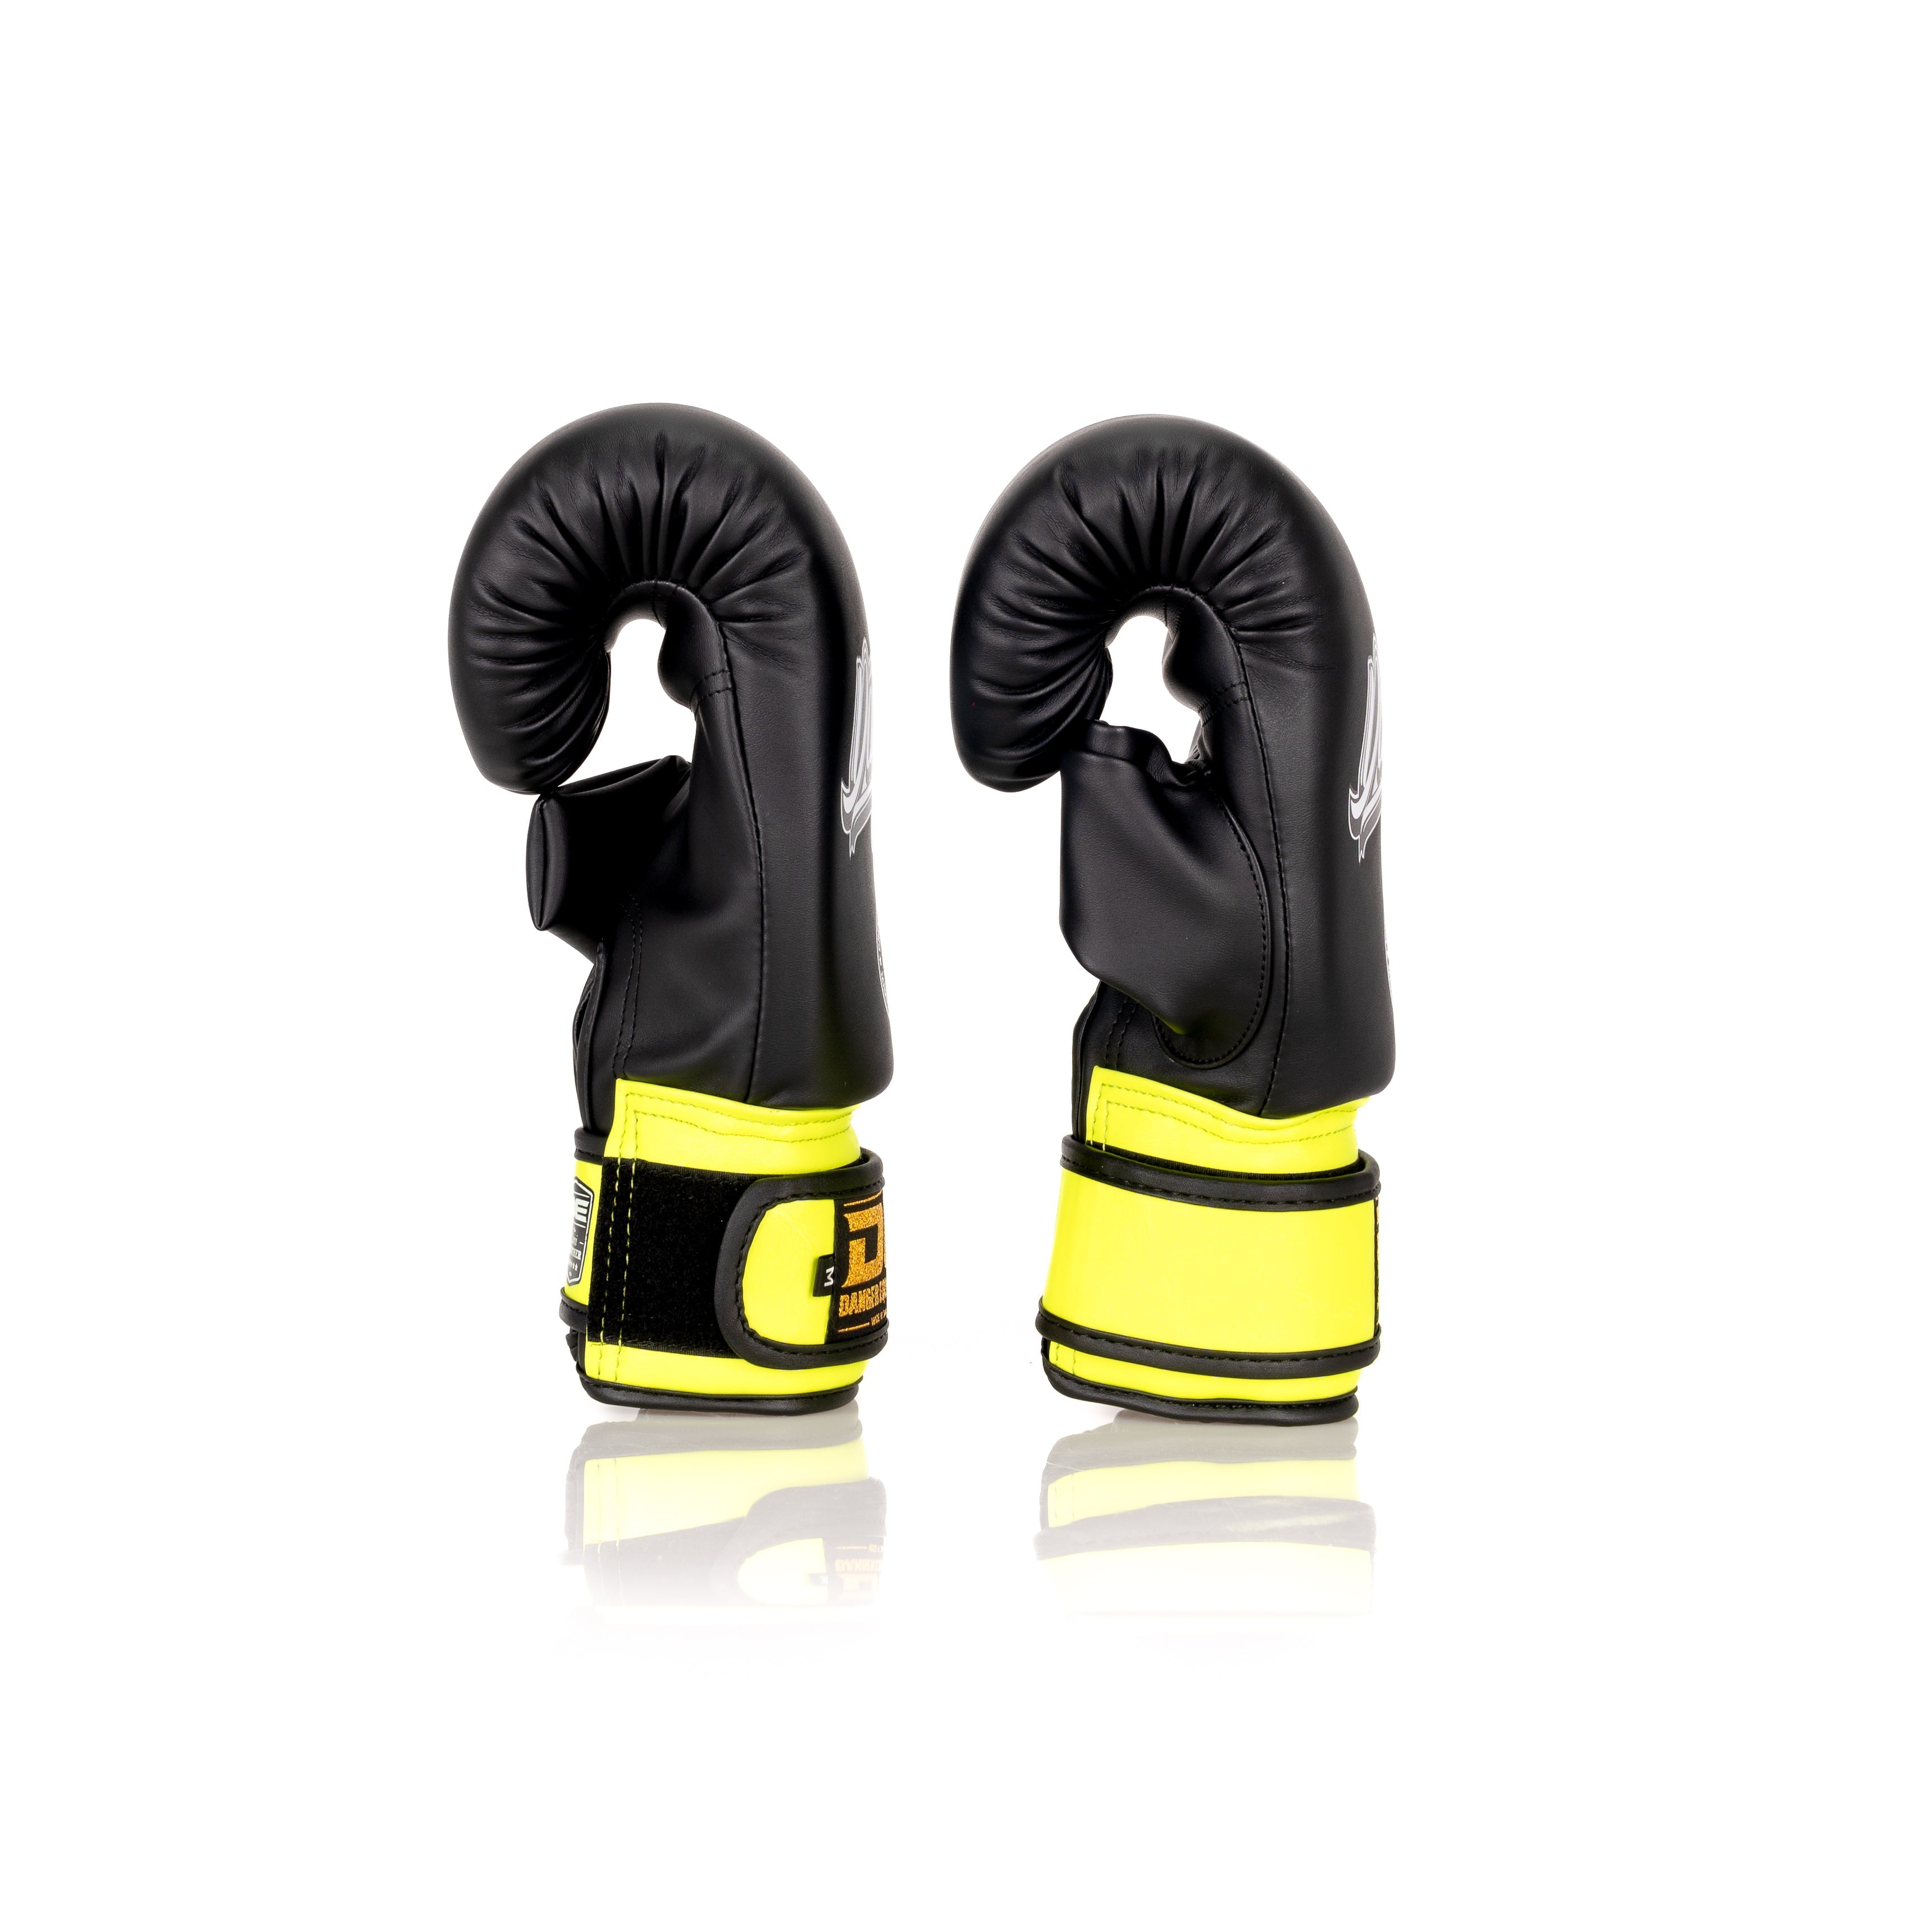 Black/Yellow Danger Equipment Bag Boxing Gloves Side